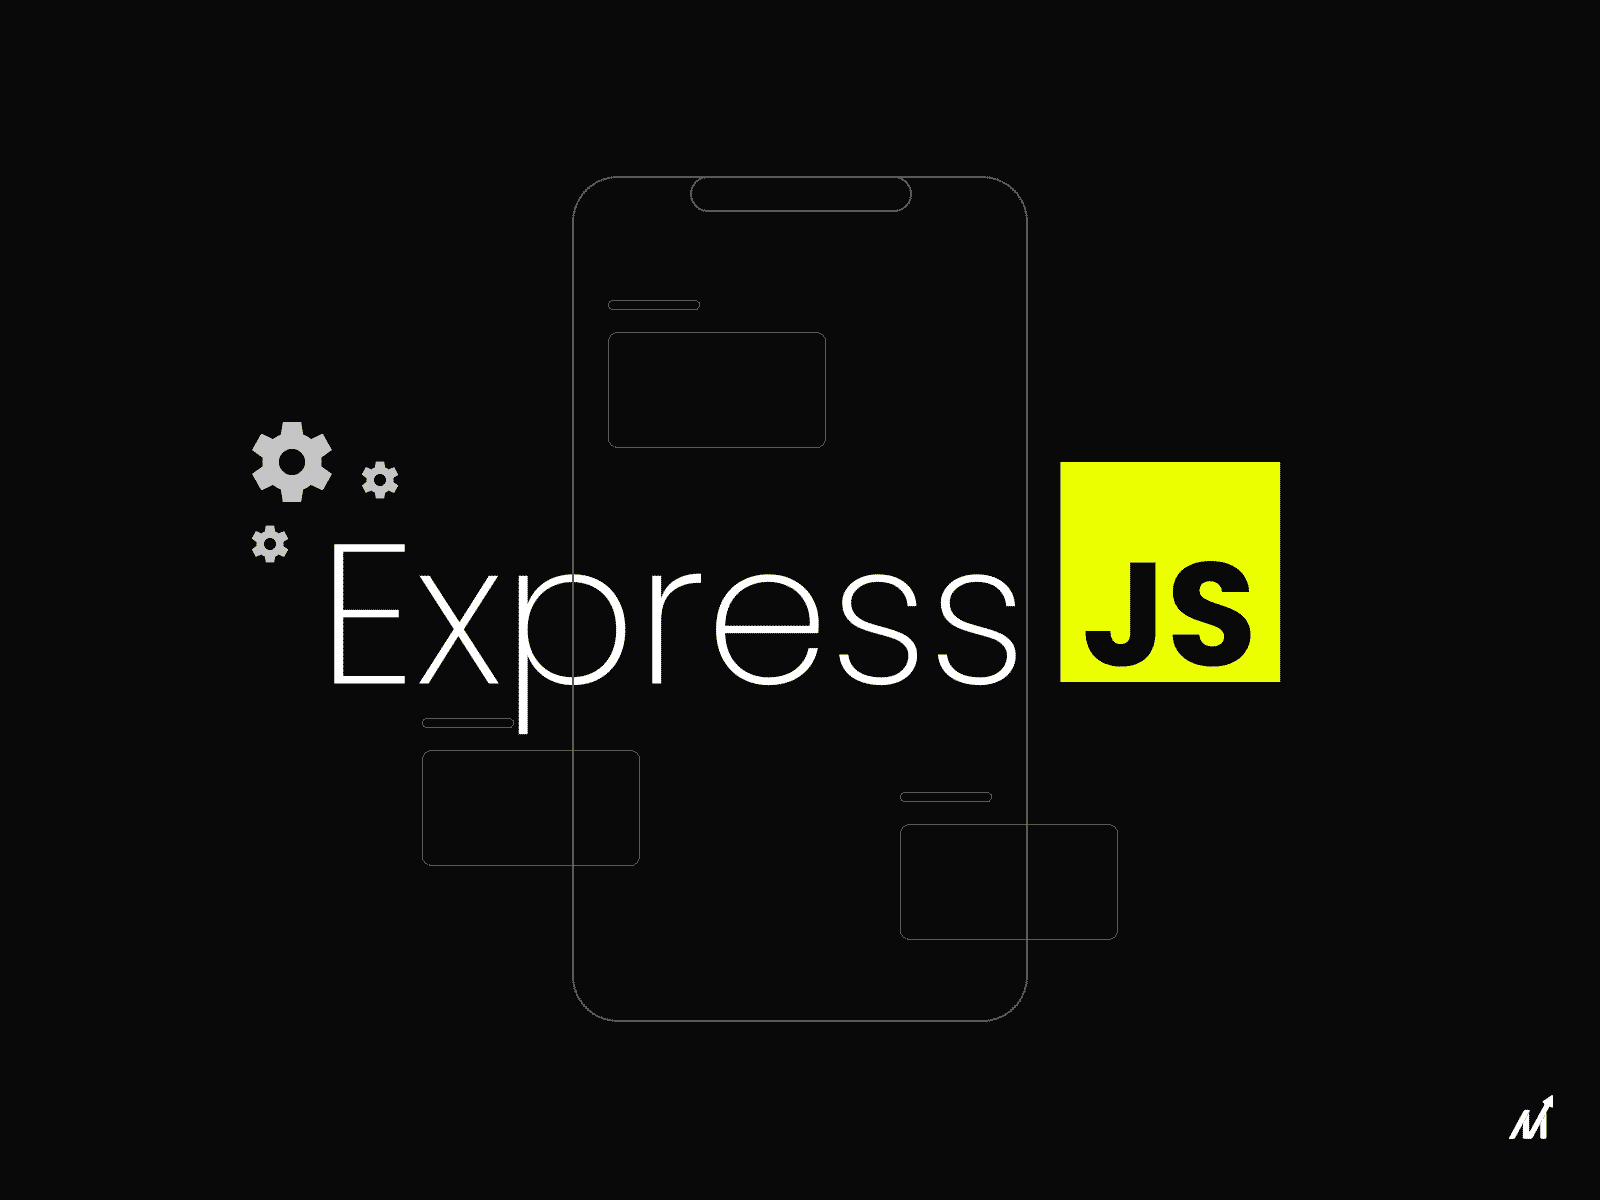 Express.js app development enterprise